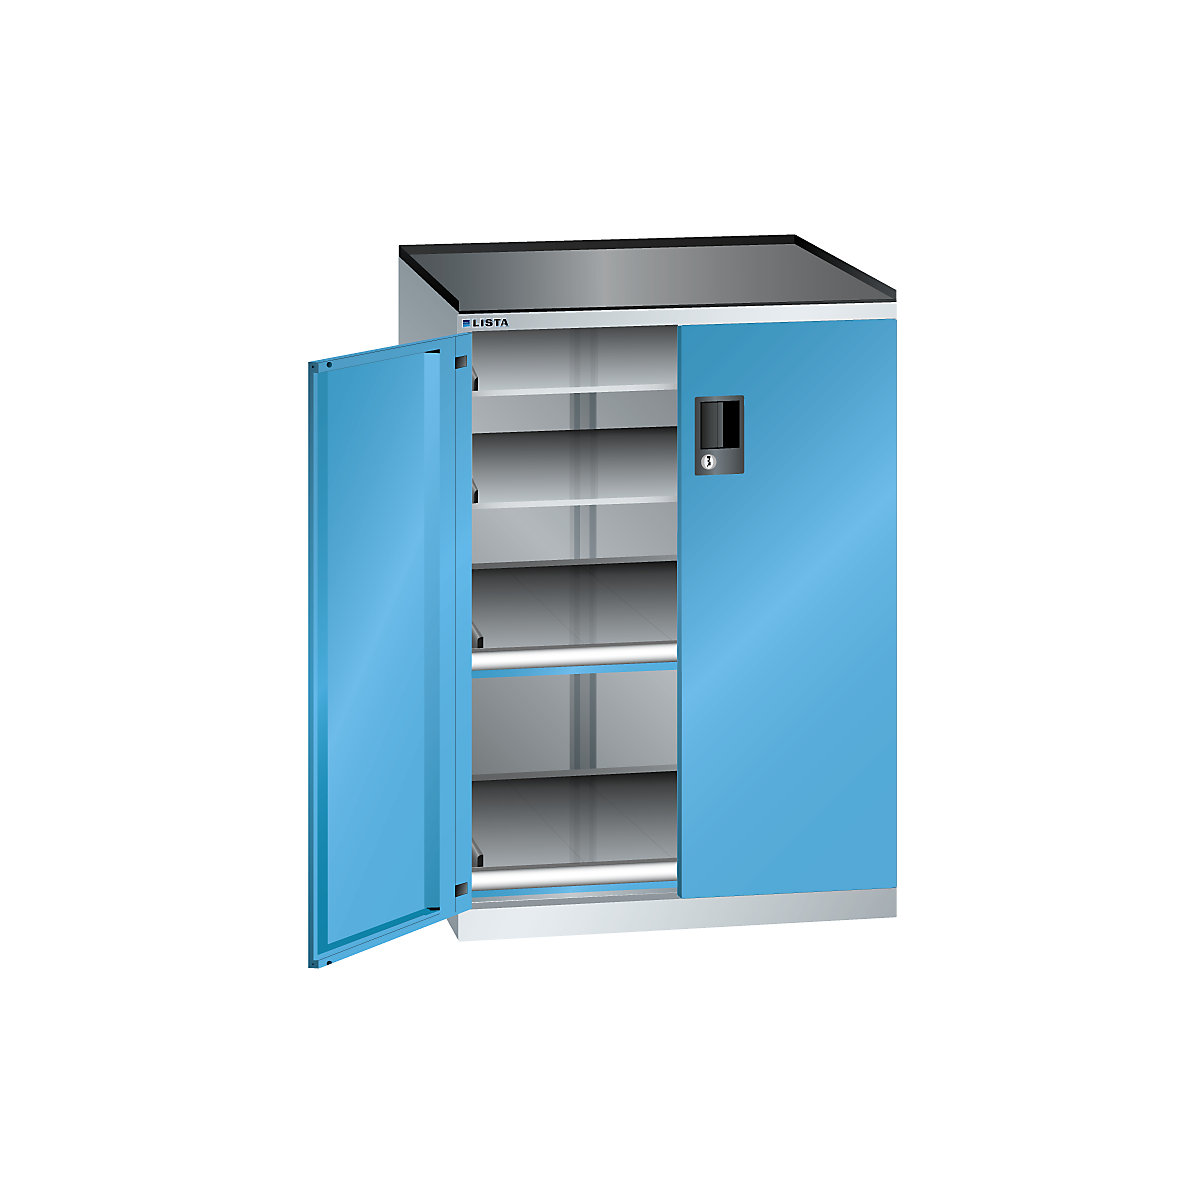 Armoire à tiroirs à portes battantes – LISTA, hauteur 1020 mm, 4 tablettes, charge max. 200 kg, bleu clair-1